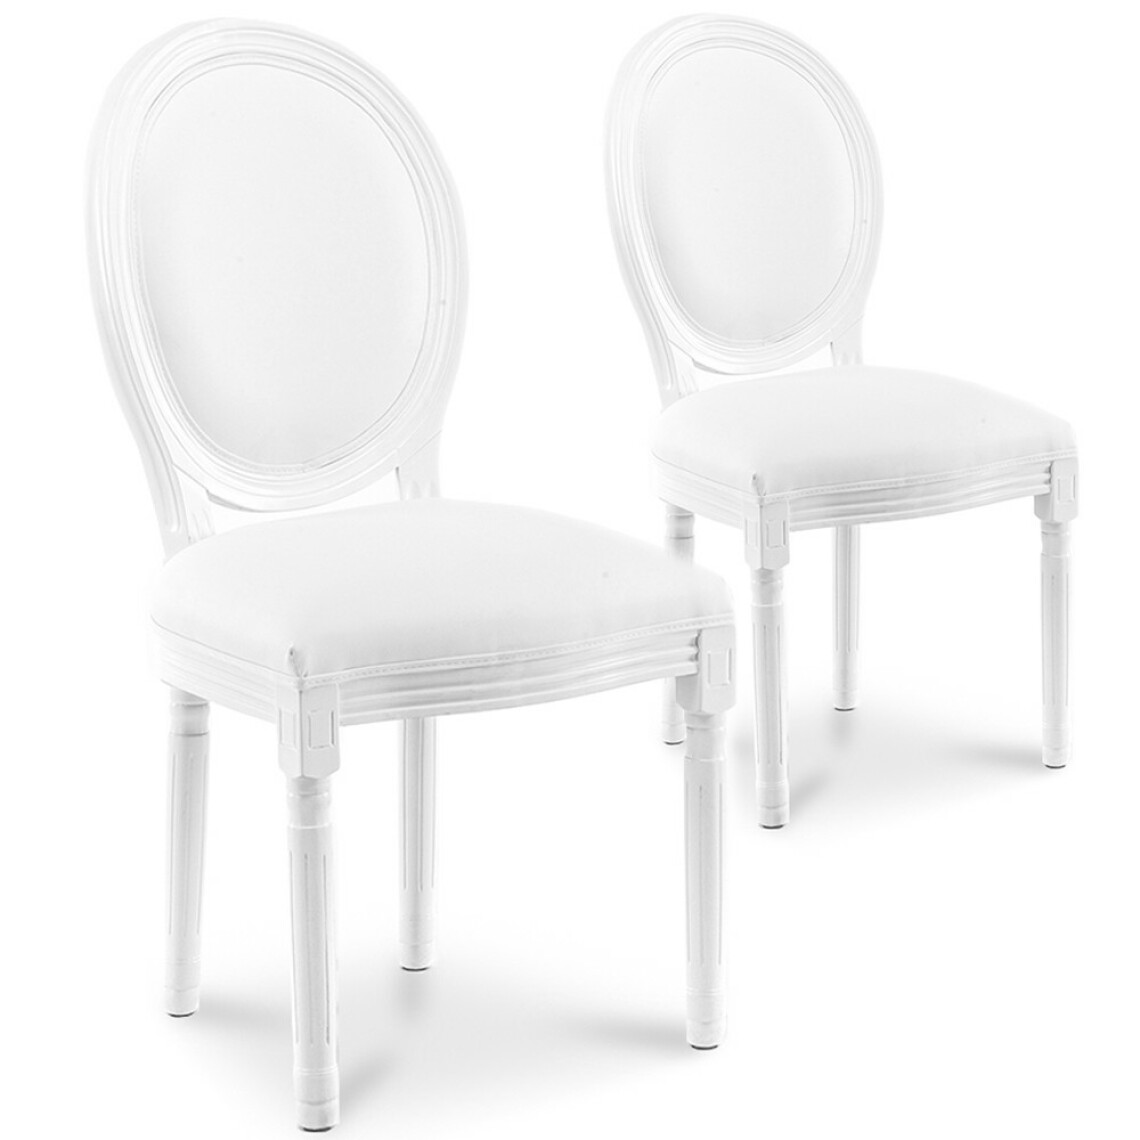 marque generique - Lot de 2 chaises médaillon Louis XVI simili Blanc - Chaises